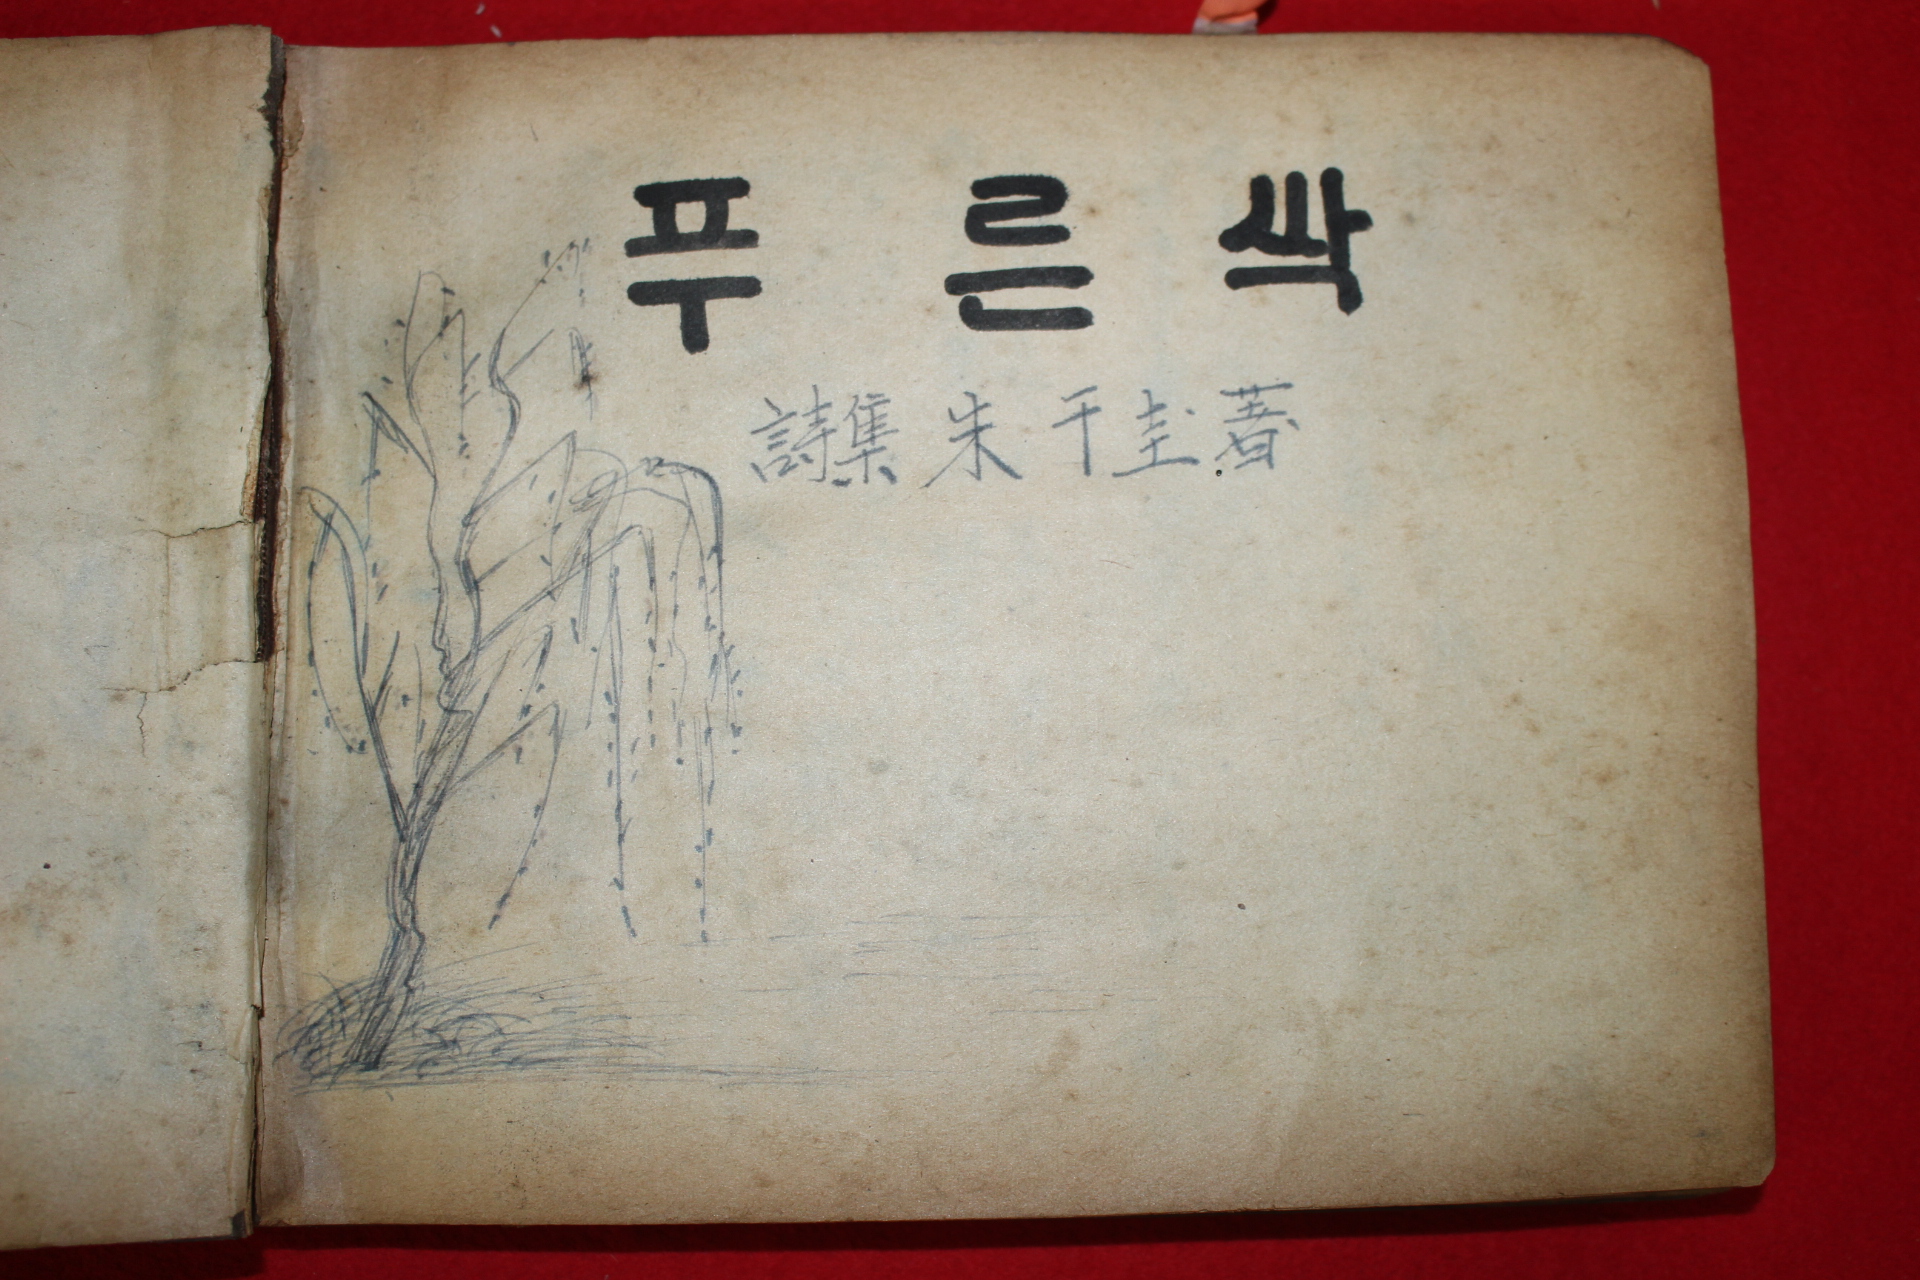 1955년 주천규(朱千圭) 미간행 시집 원고본 푸른 싹